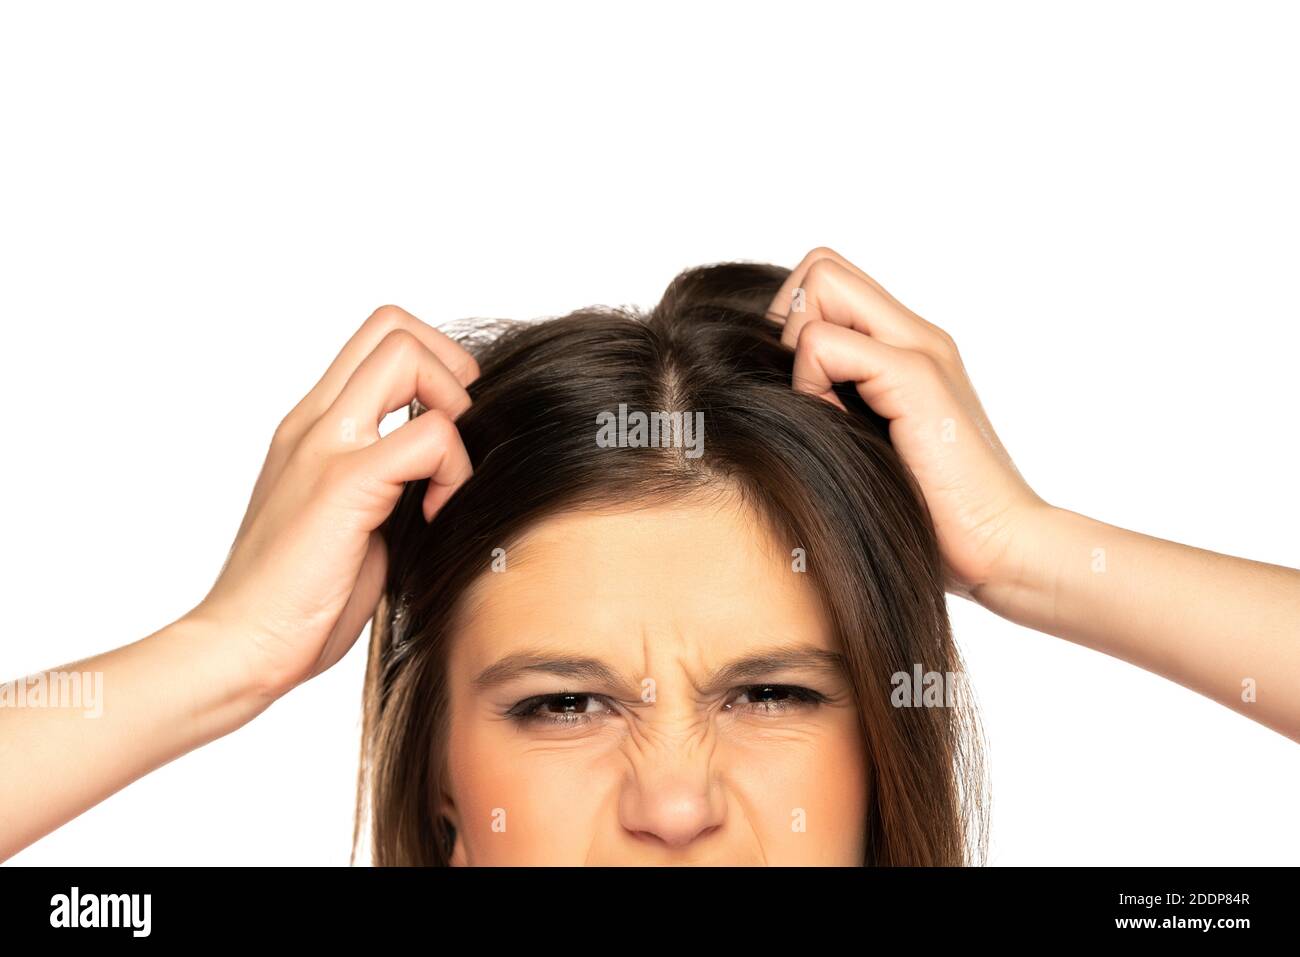 Halbporträt der jungen nervösen Frau kratzt ihren Kopf auf Weißer Hintergrund Stockfoto